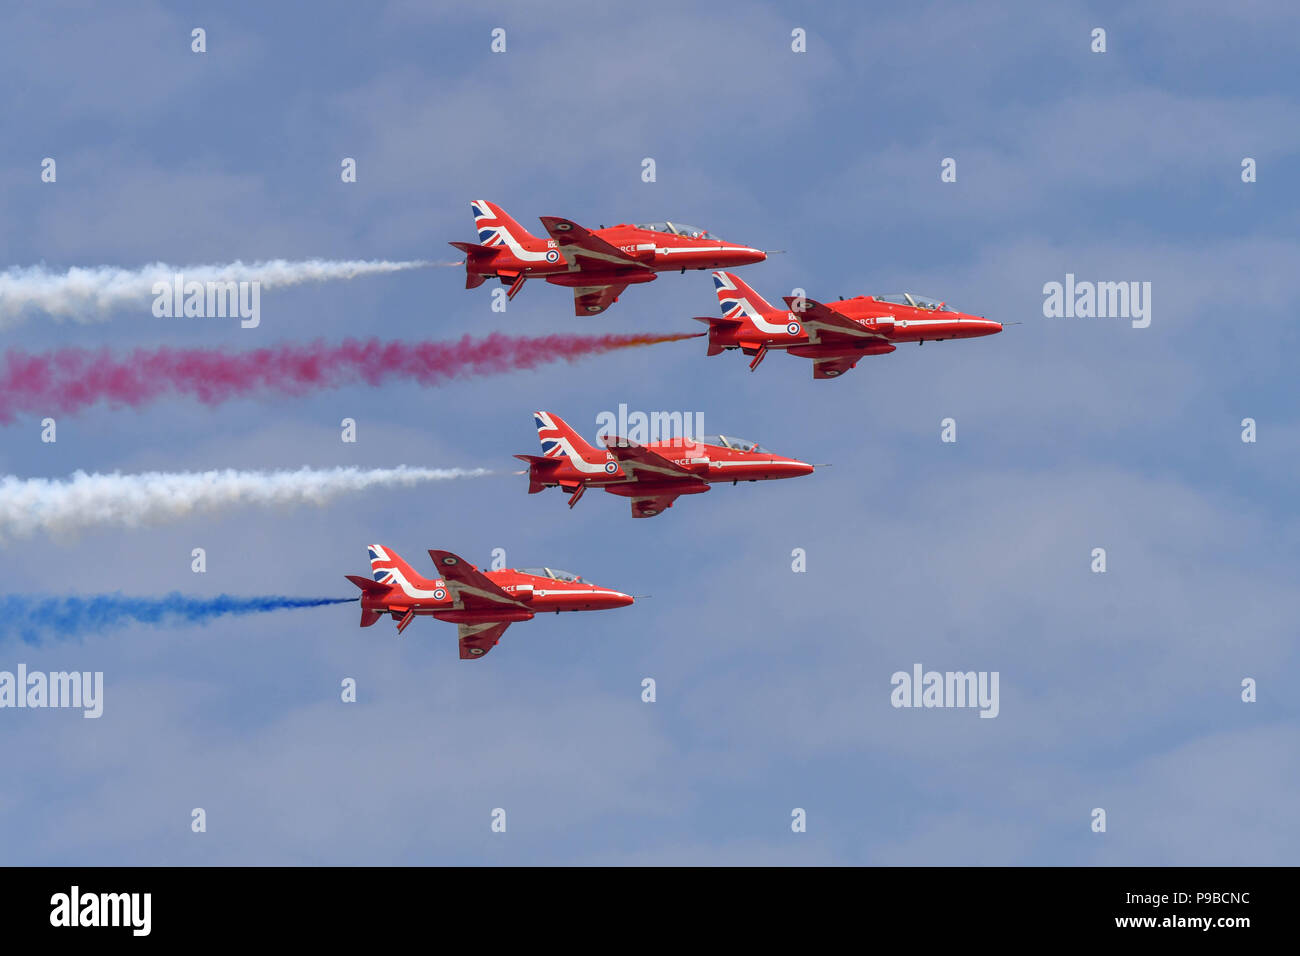 Quattro aviogetti Hawk della Royal Air Force aerobatic team, le frecce rosse, volare in formazione presso il Royal International Air Tattoo 2018 Foto Stock